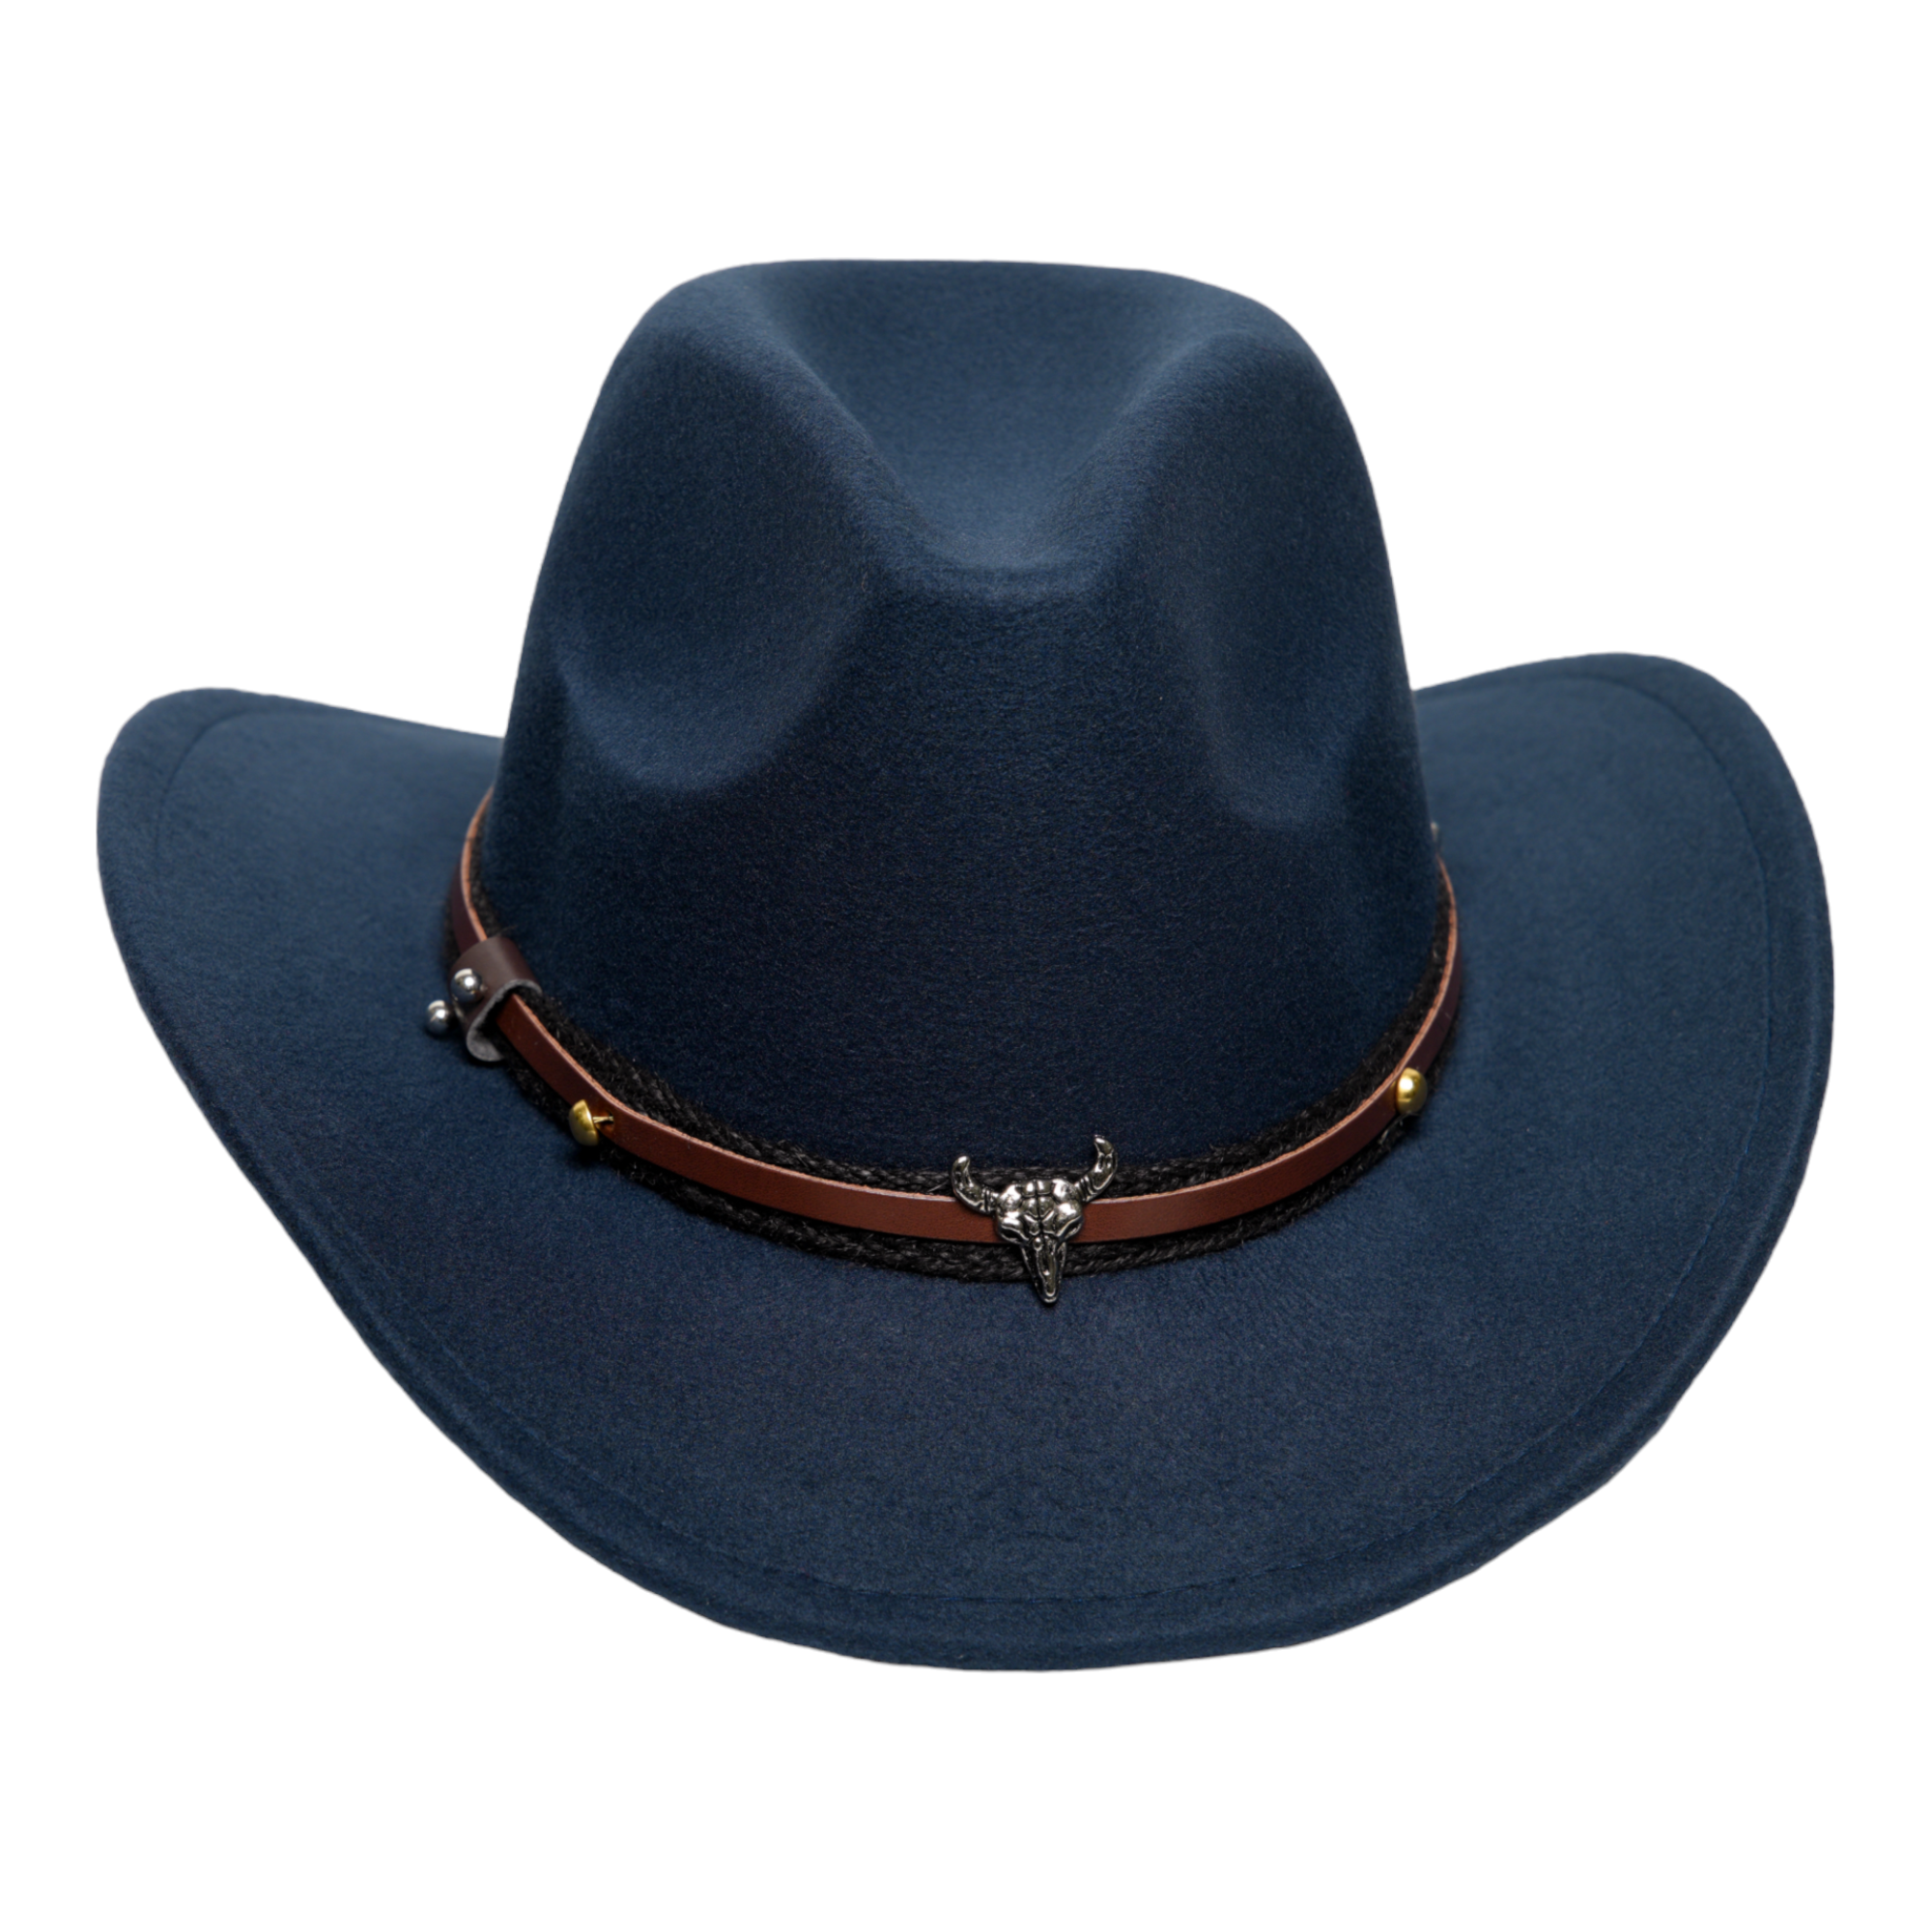 Chokore American Cowhead cowboy Hat (Navy Blue)